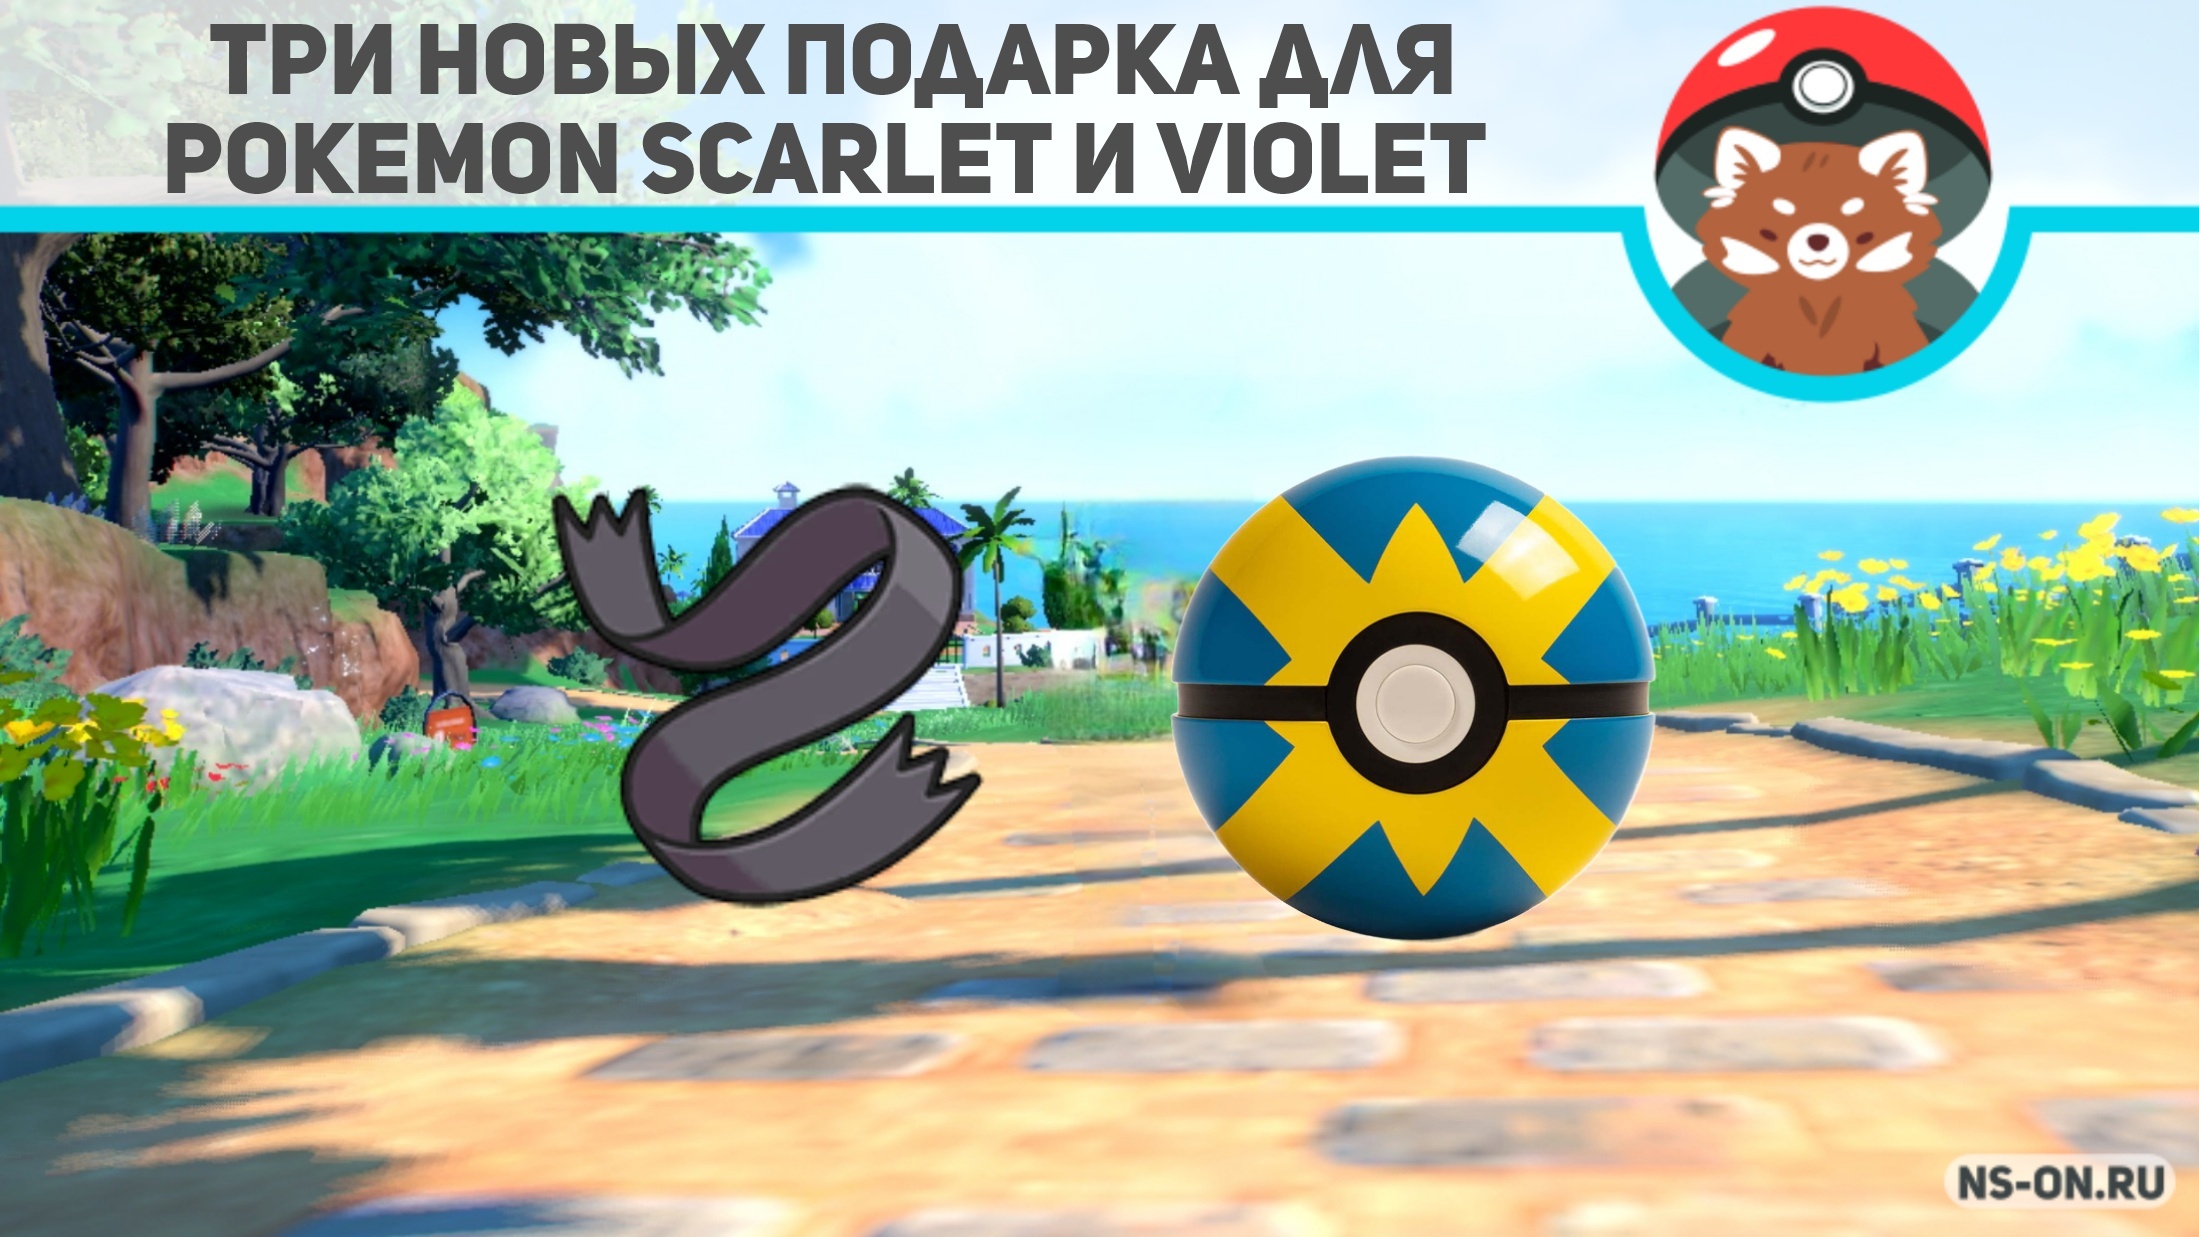 Вы сейчас просматриваете Три новых подарка для Pokemon Scarlet и Violet